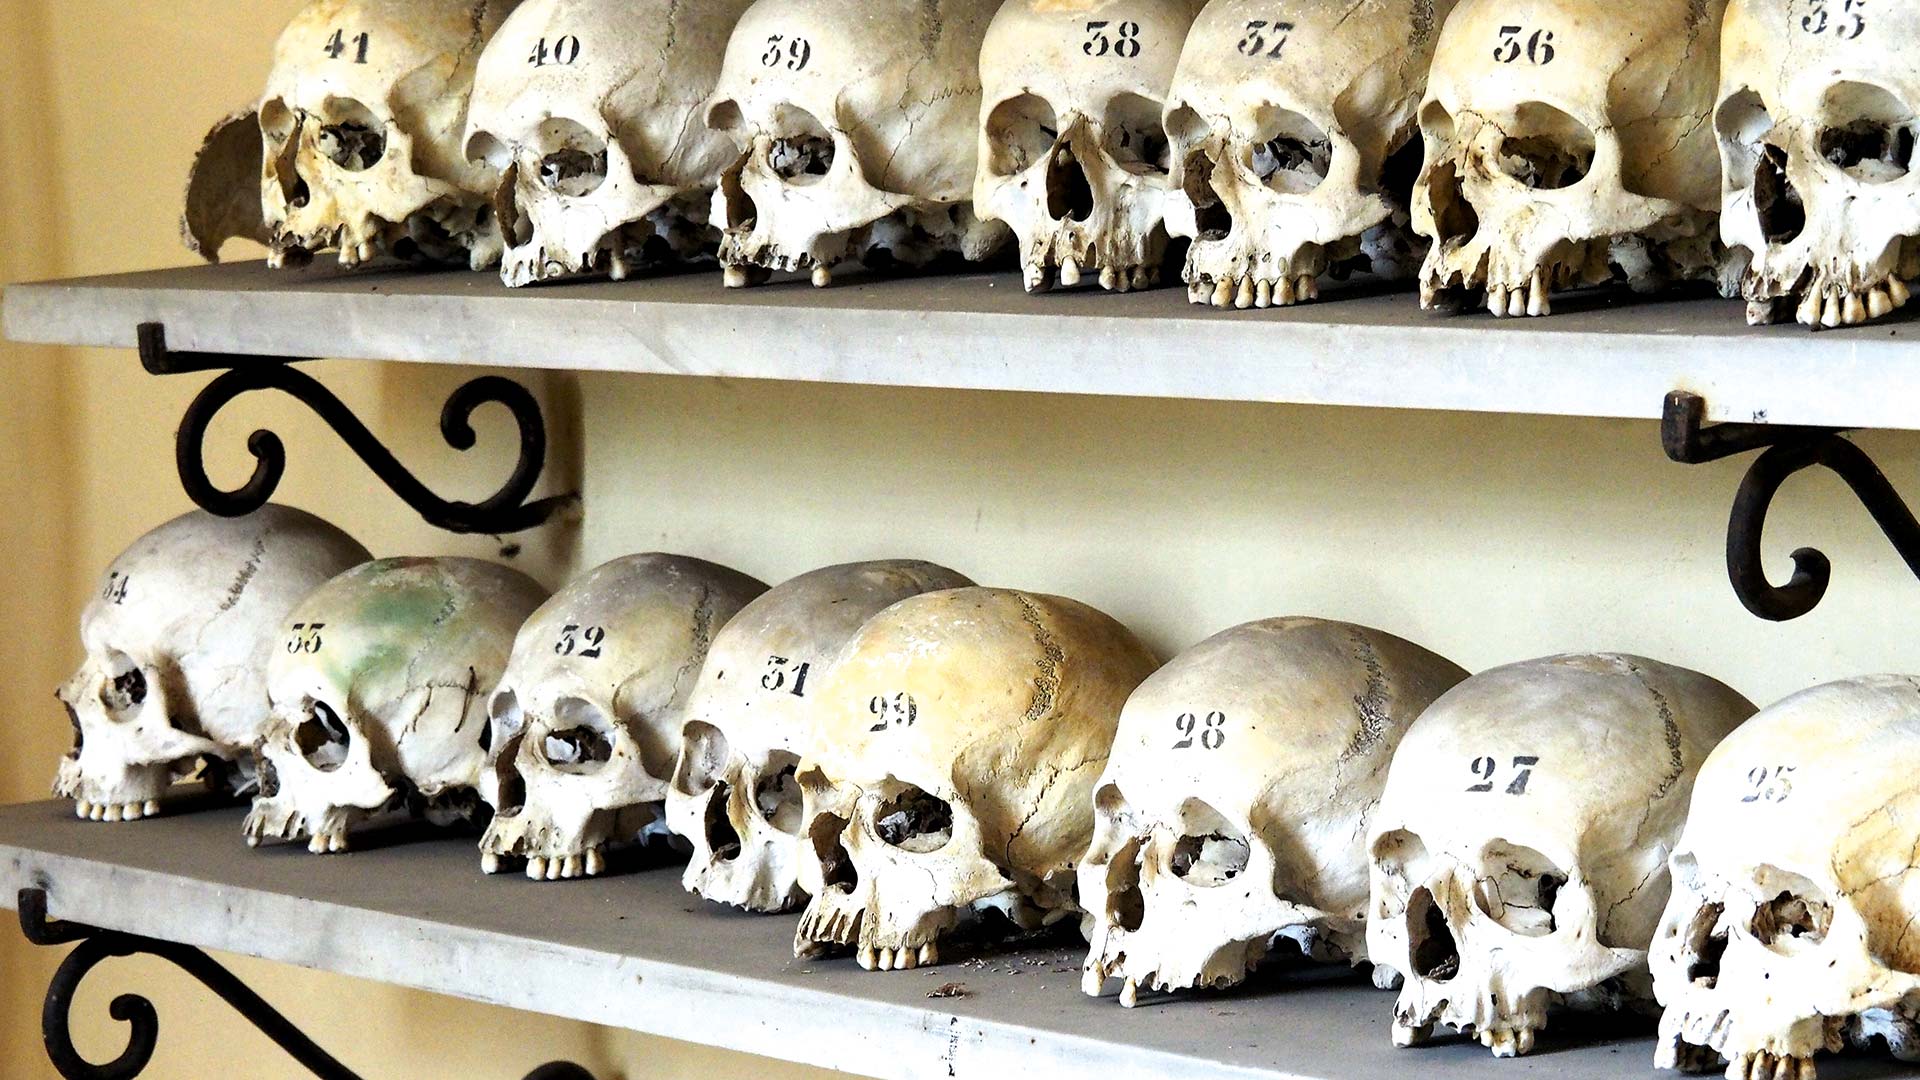 Regale voller Knochen, anatomisch sortiert, nummerierte Schädel.